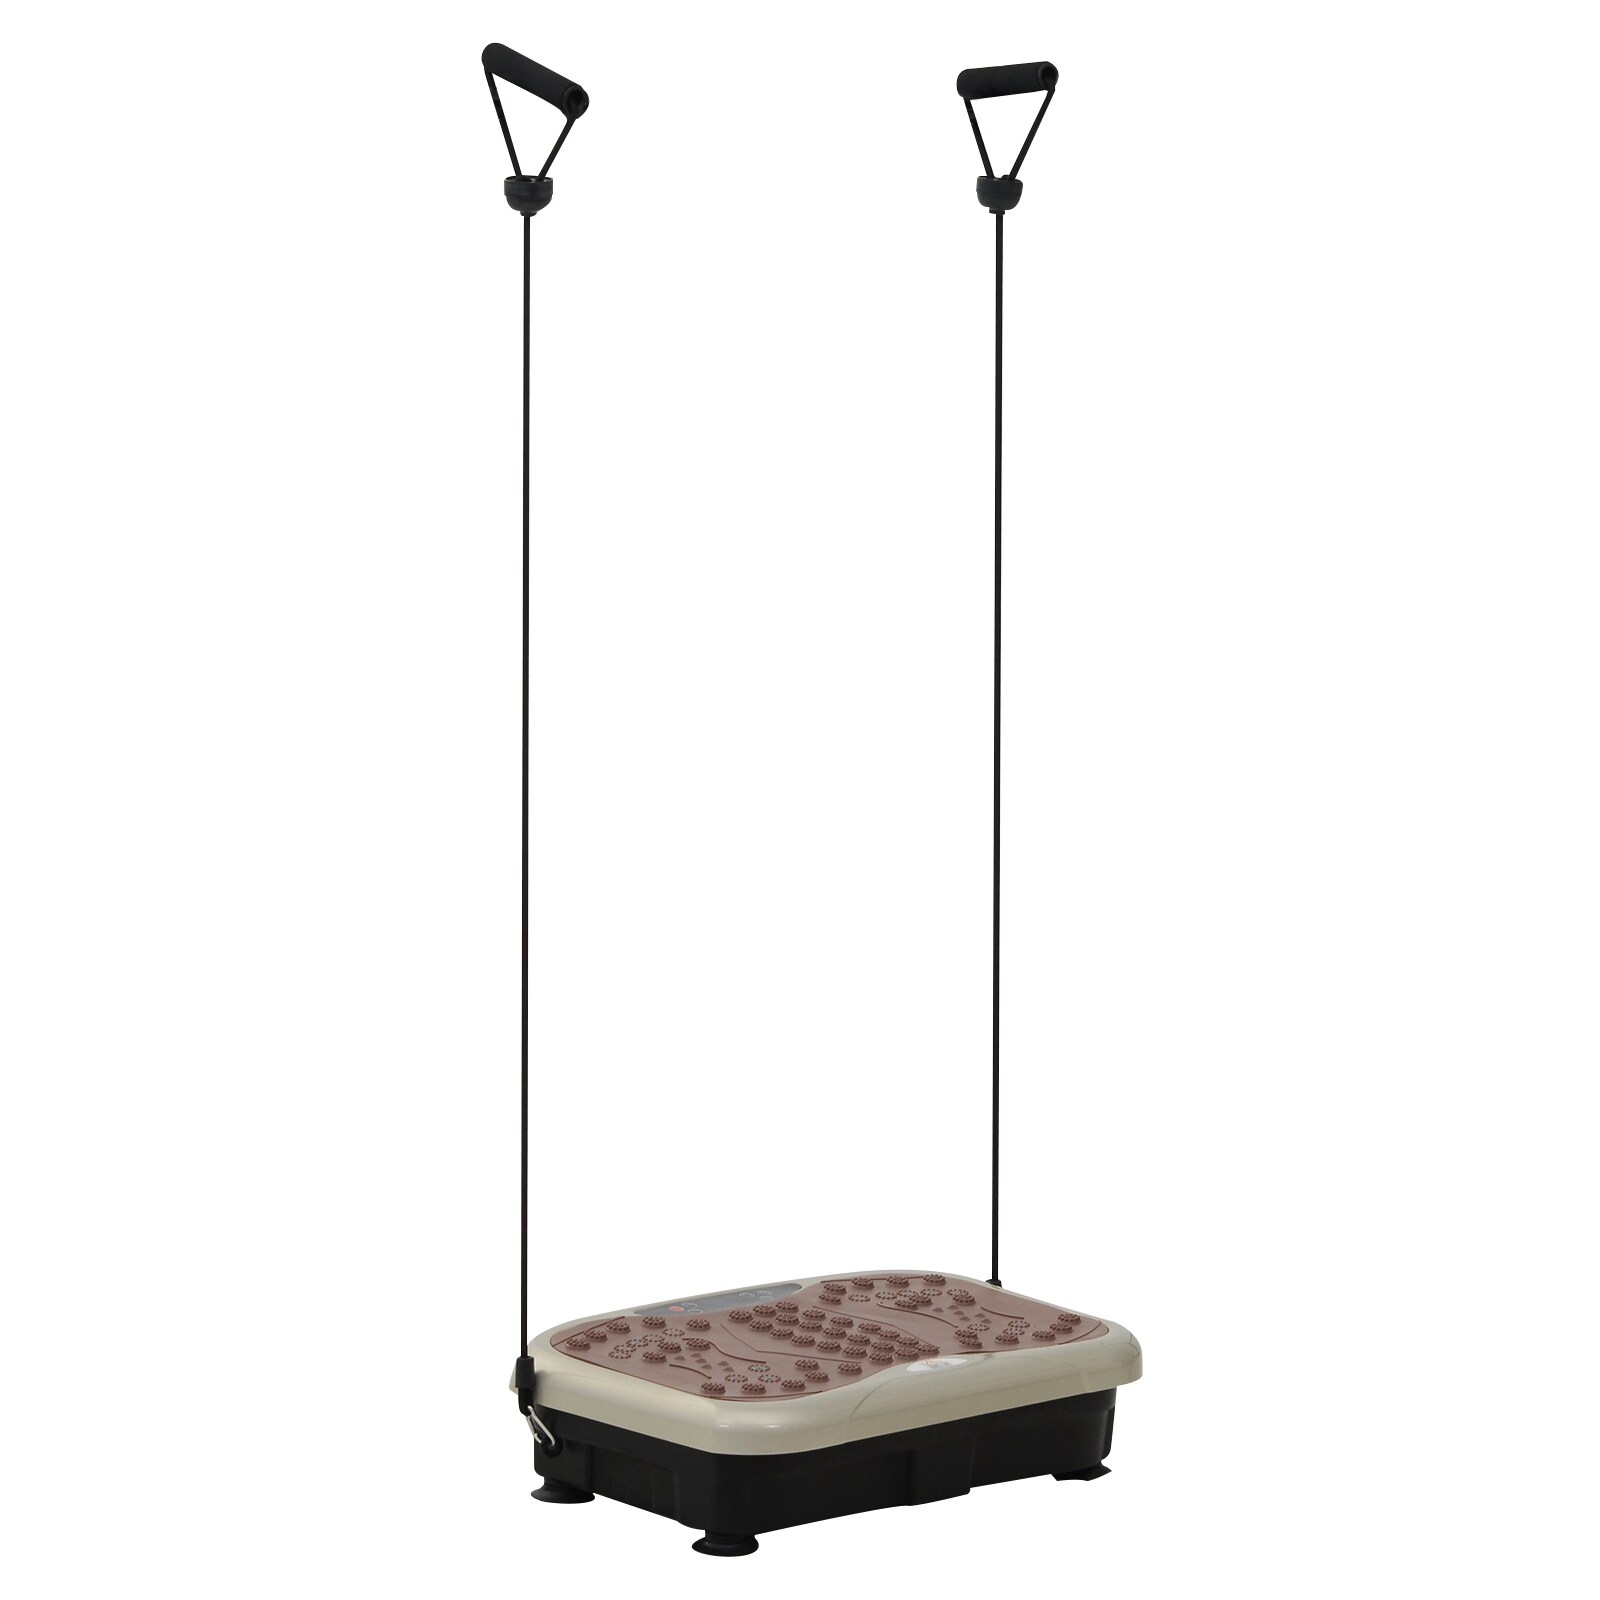 HOMCOM Vibrationstrainer mit USB-Lautsprecher schwarz, beige, braun 54 x 33 x 14 cm (LxBxH)